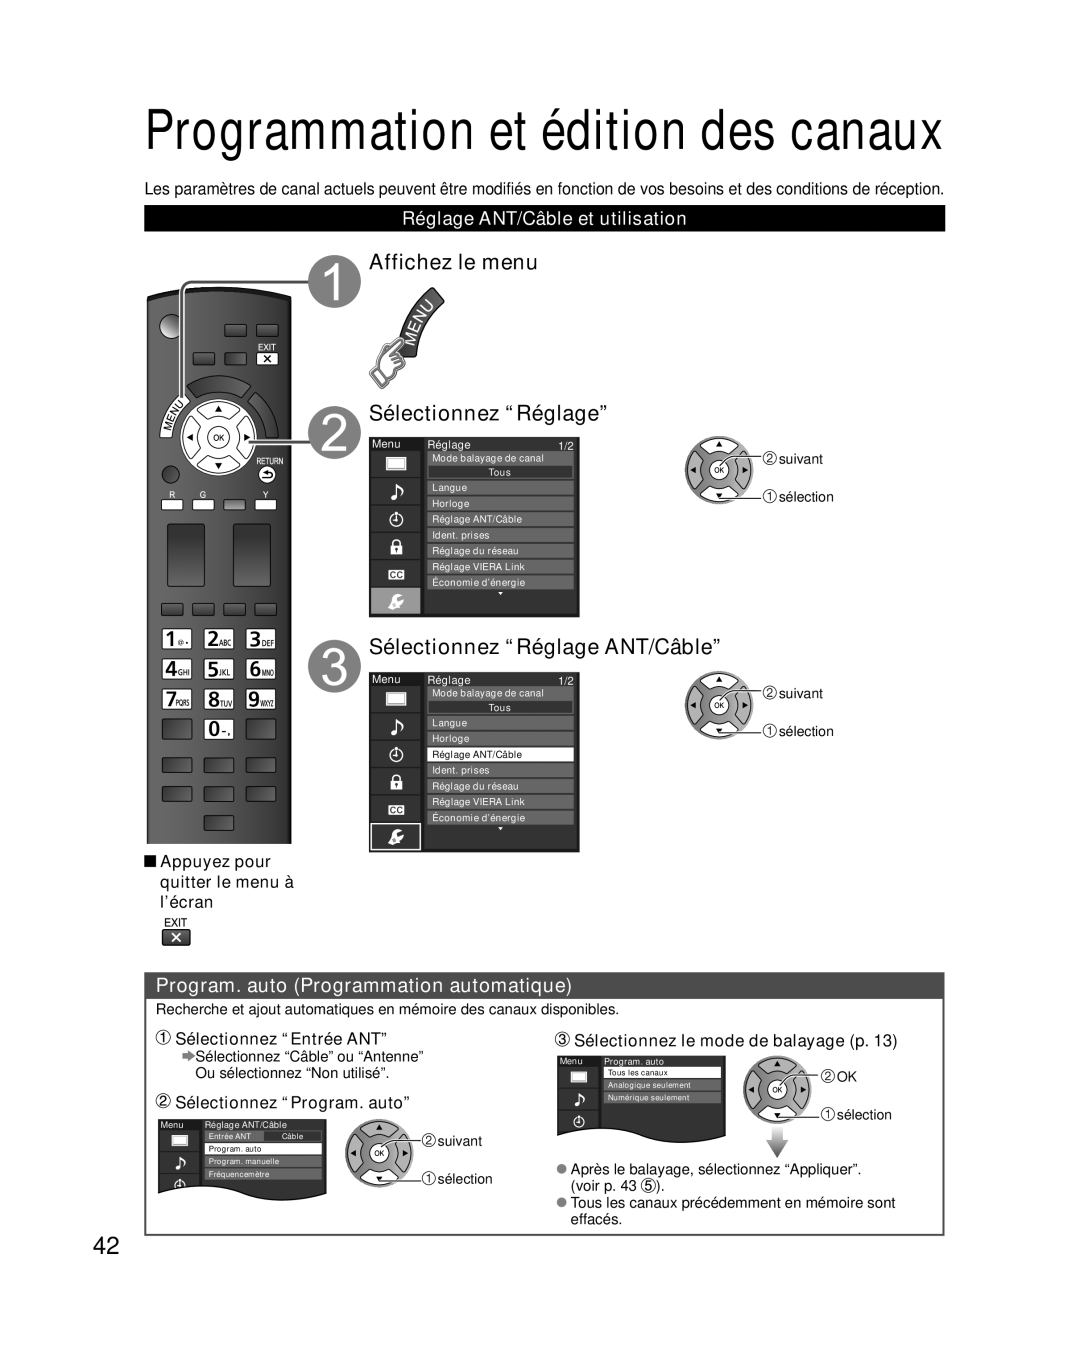 Panasonic TC-L32E3 Programmation et édition des canaux, Affichez le menu Sélectionnez “Réglage”, Sélectionnez “Entrée ANT” 